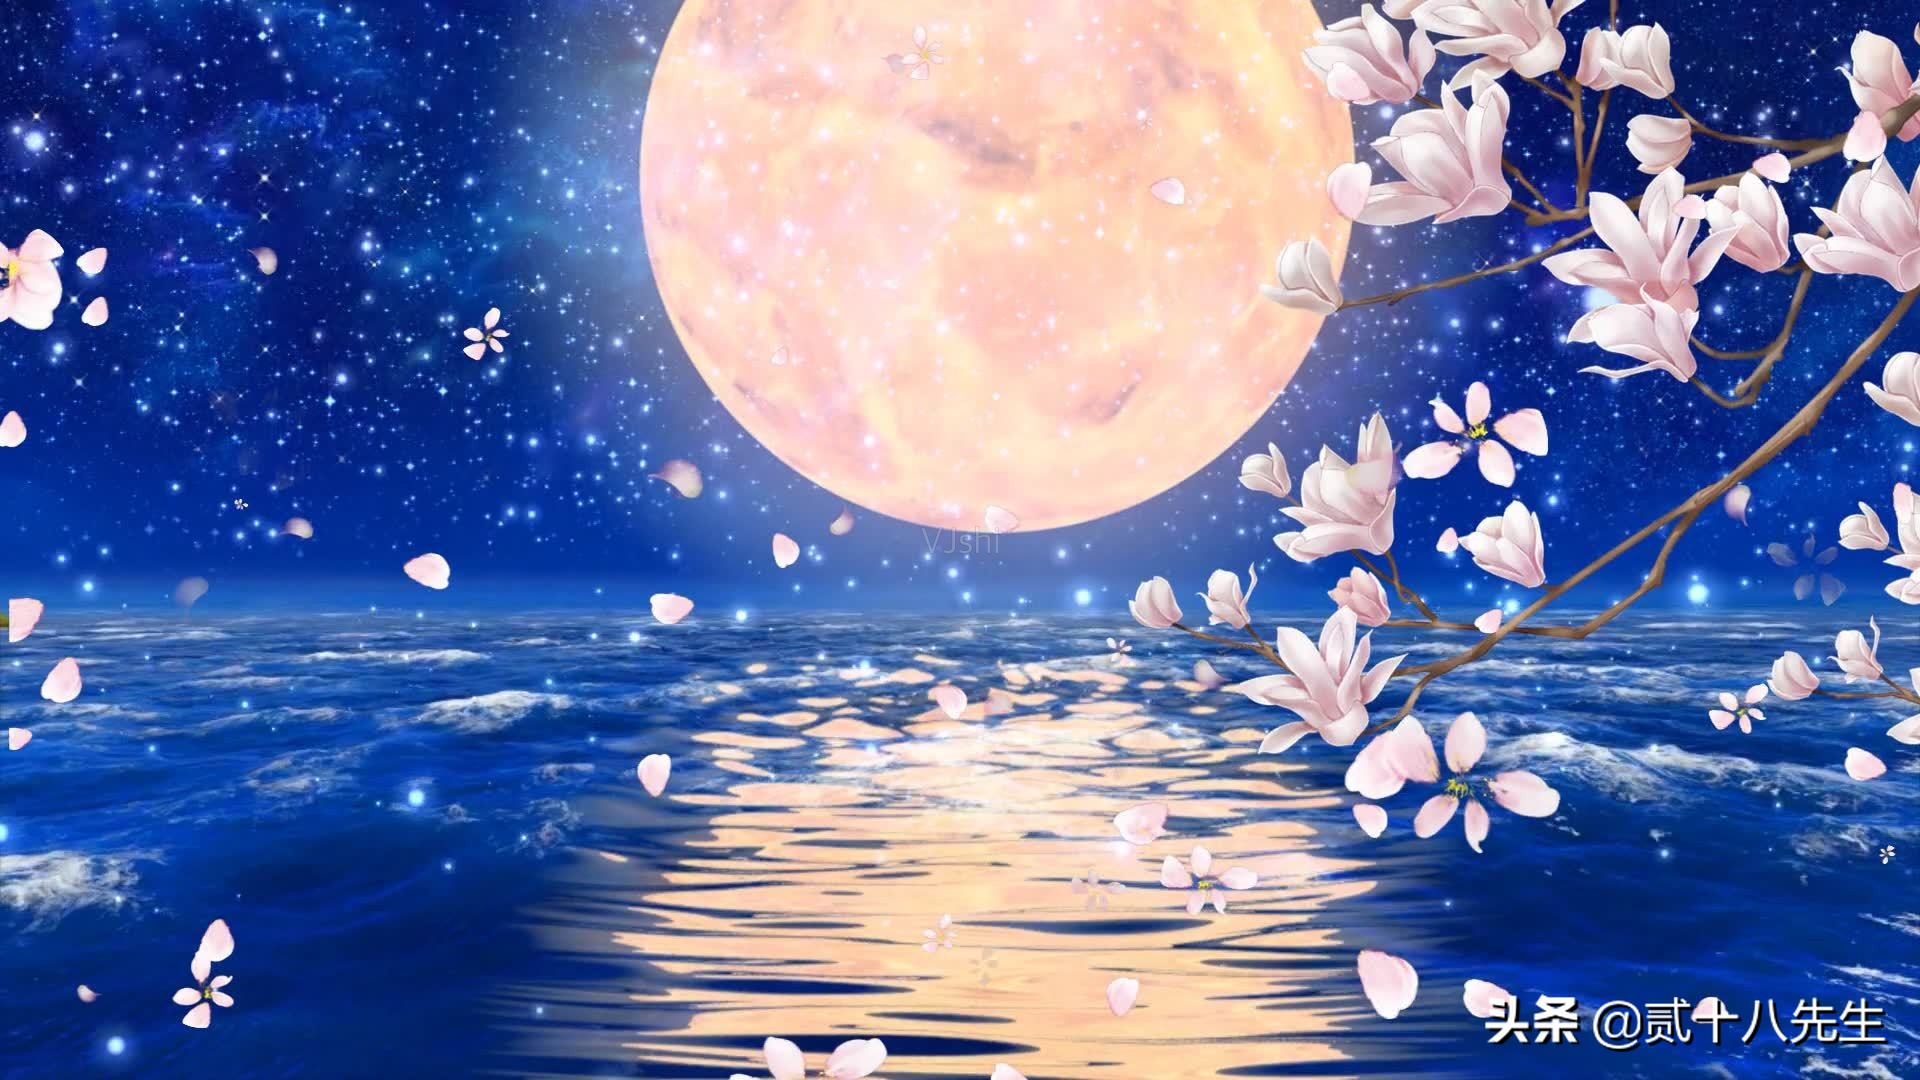 在这最美的月圆之夜，将十首最美的写月诗送给你们